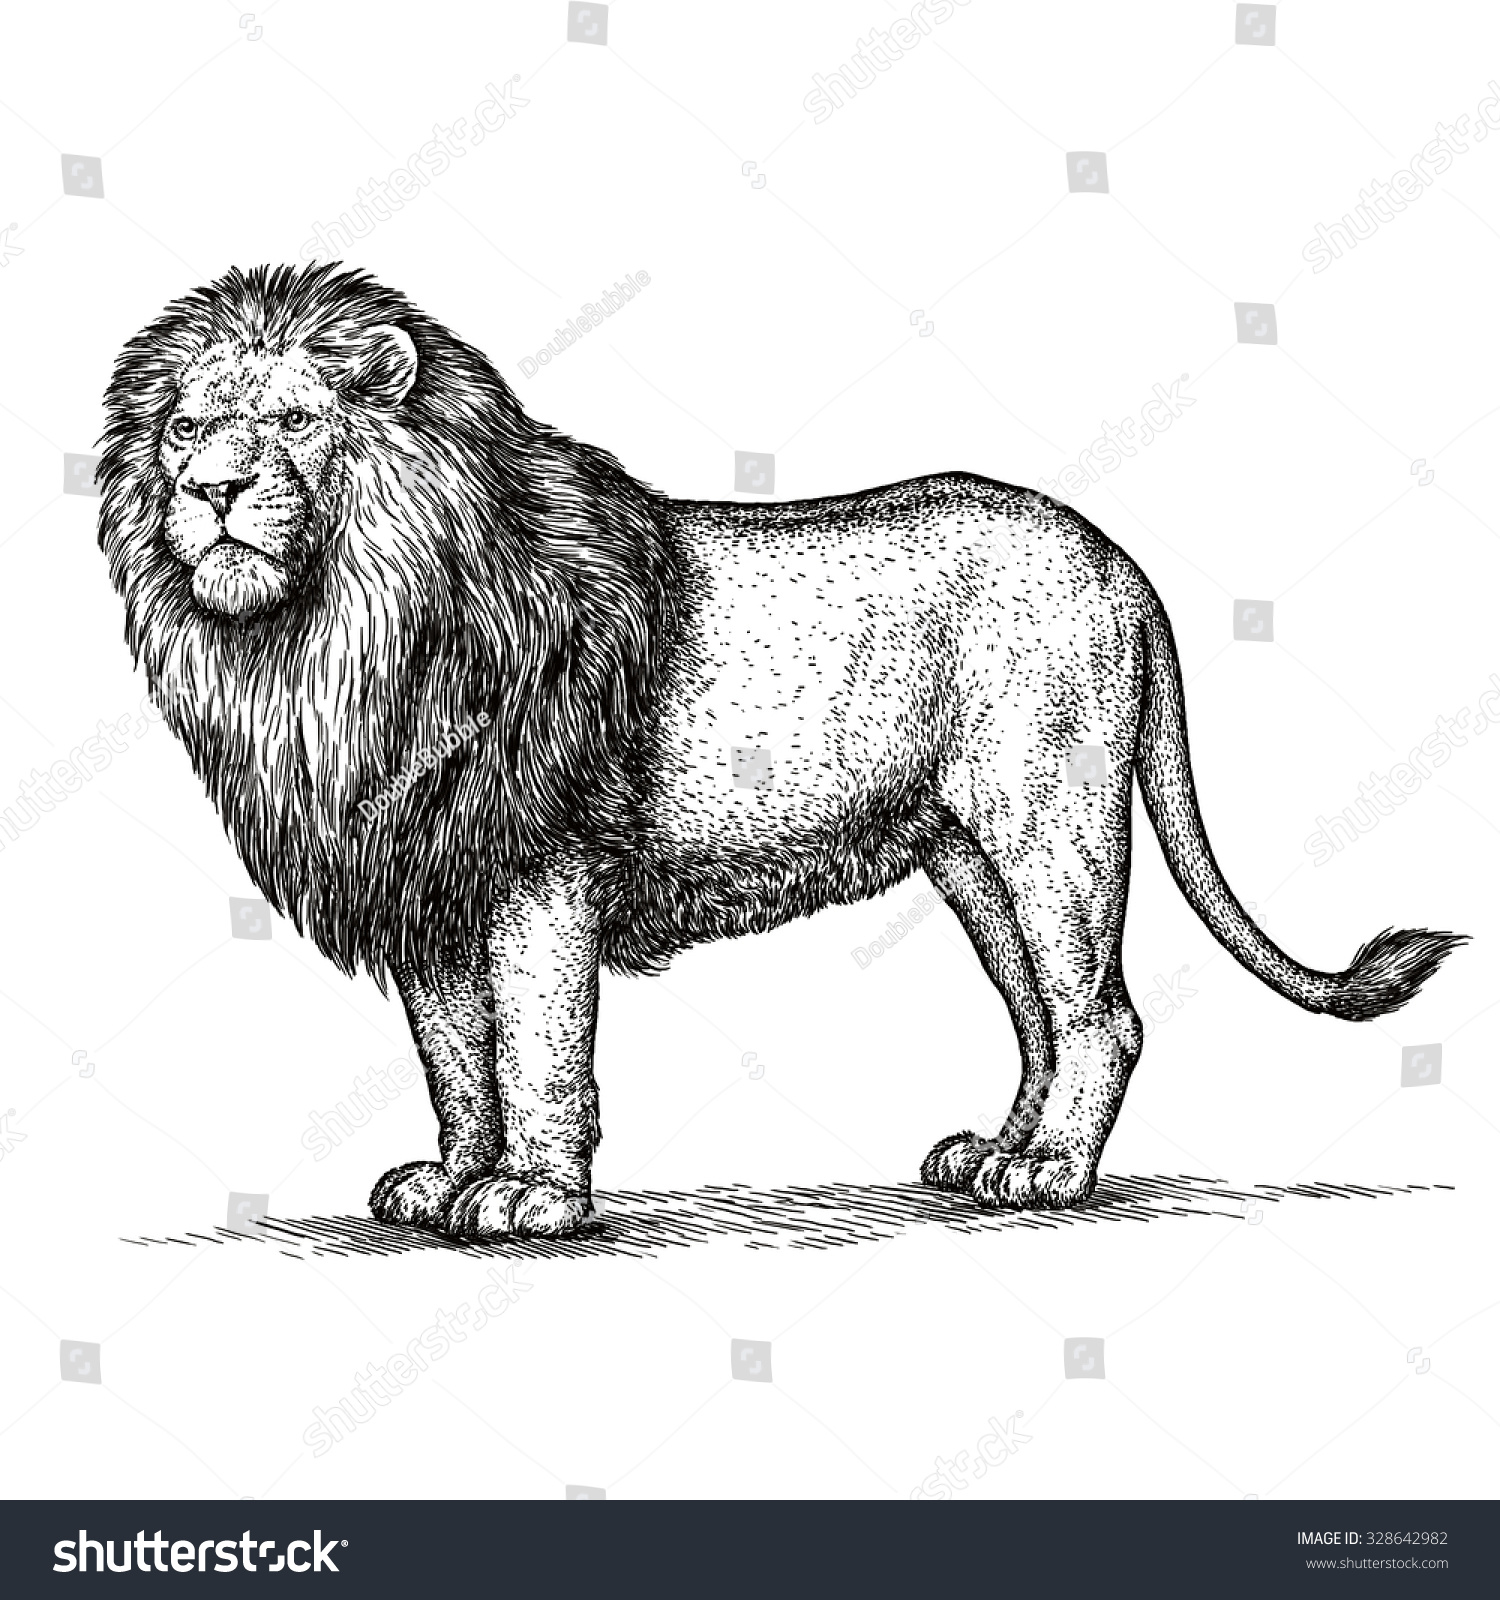 Engrave Lion Illustration - 328642982 : Shutterstock